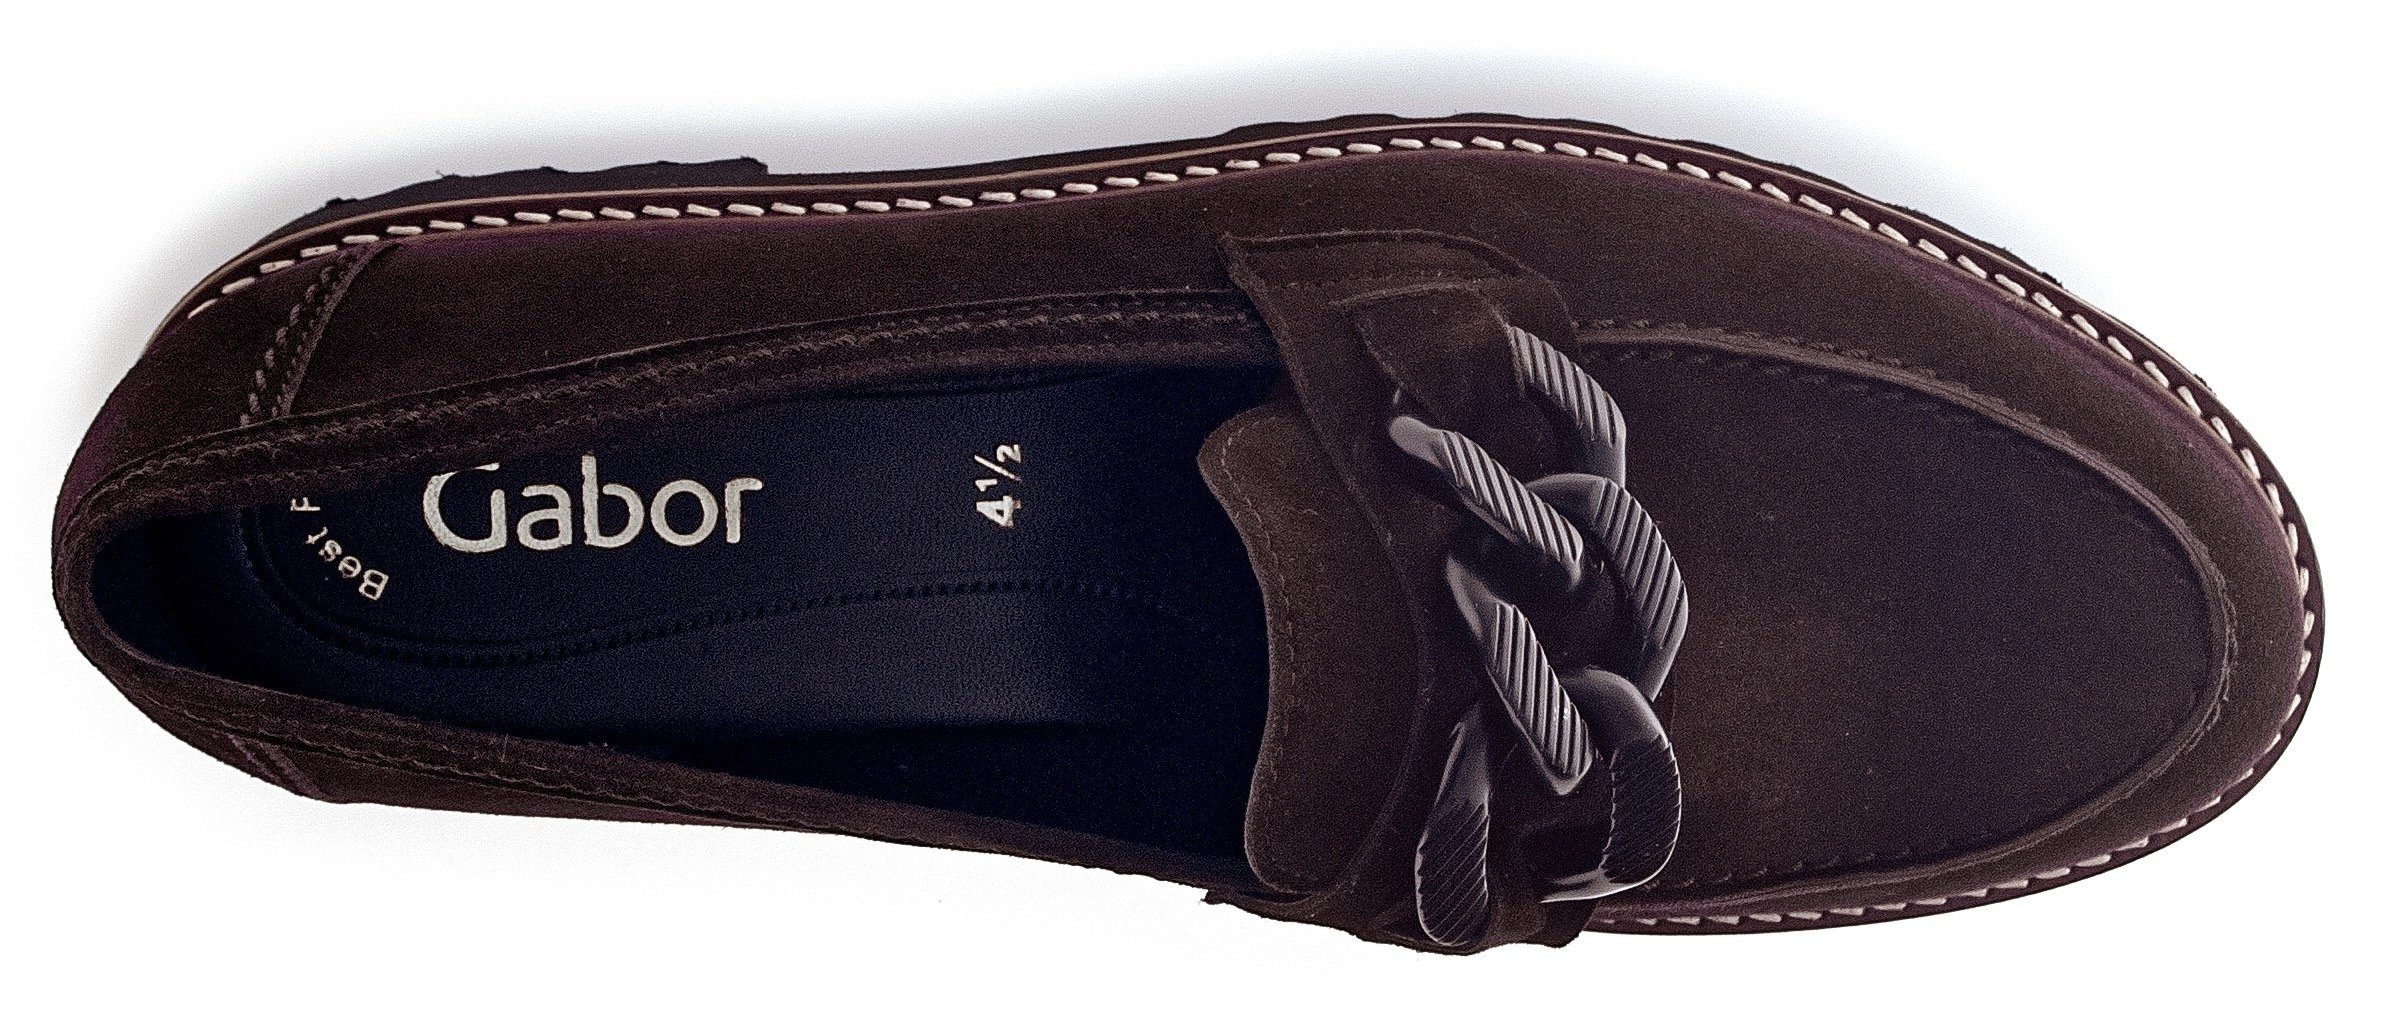 Best dunkelbraun-schwarz Slipper Fitting-Ausstattung Gabor mit